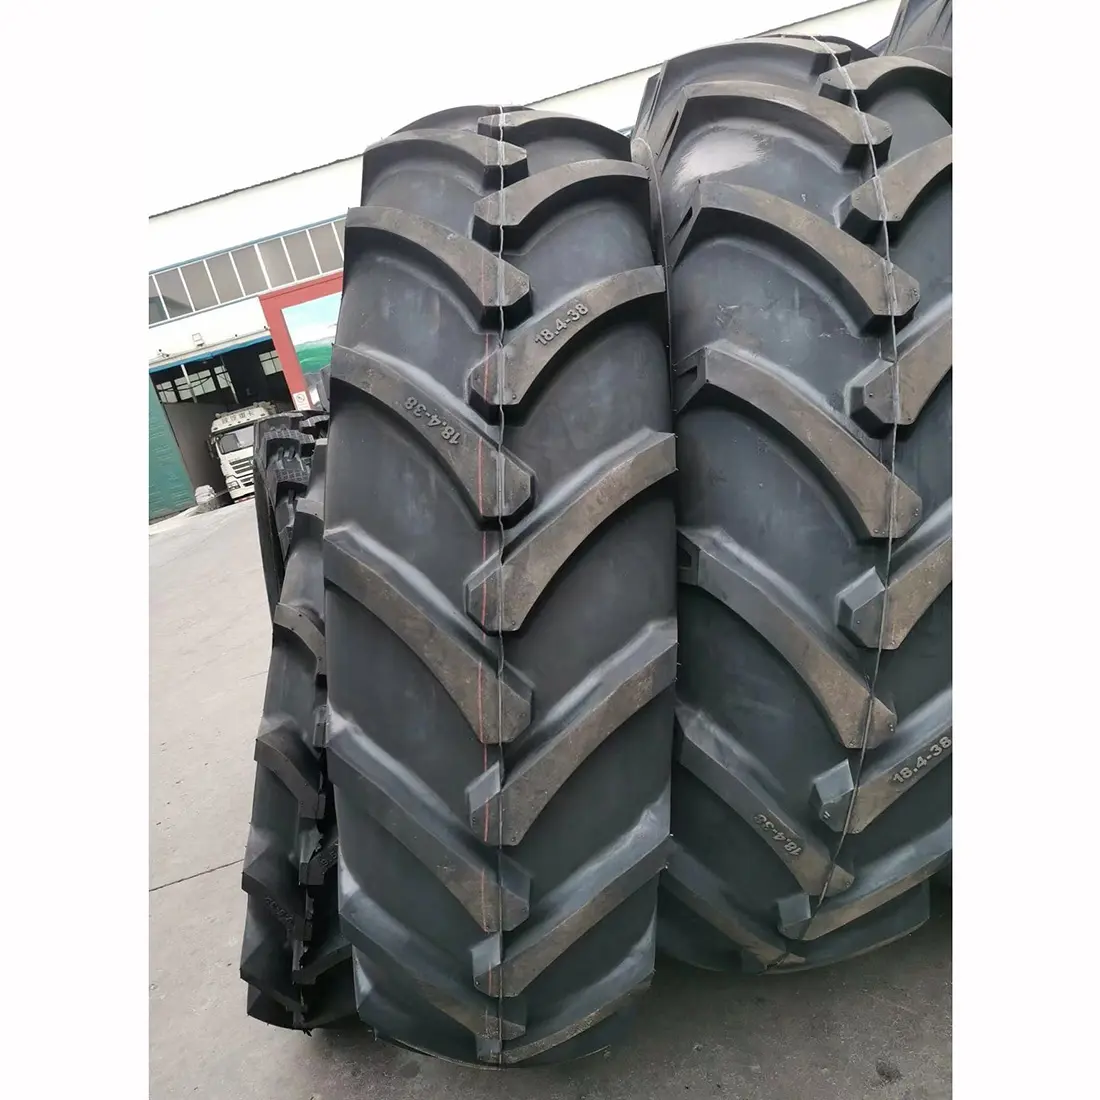 China Hersteller Großhandel Hochwertige landwirtschaft liche Traktor Bias Reifen Farm Reifen R1 F2 I1 Bewässerungs reifen Alle Größen Zum Verkauf